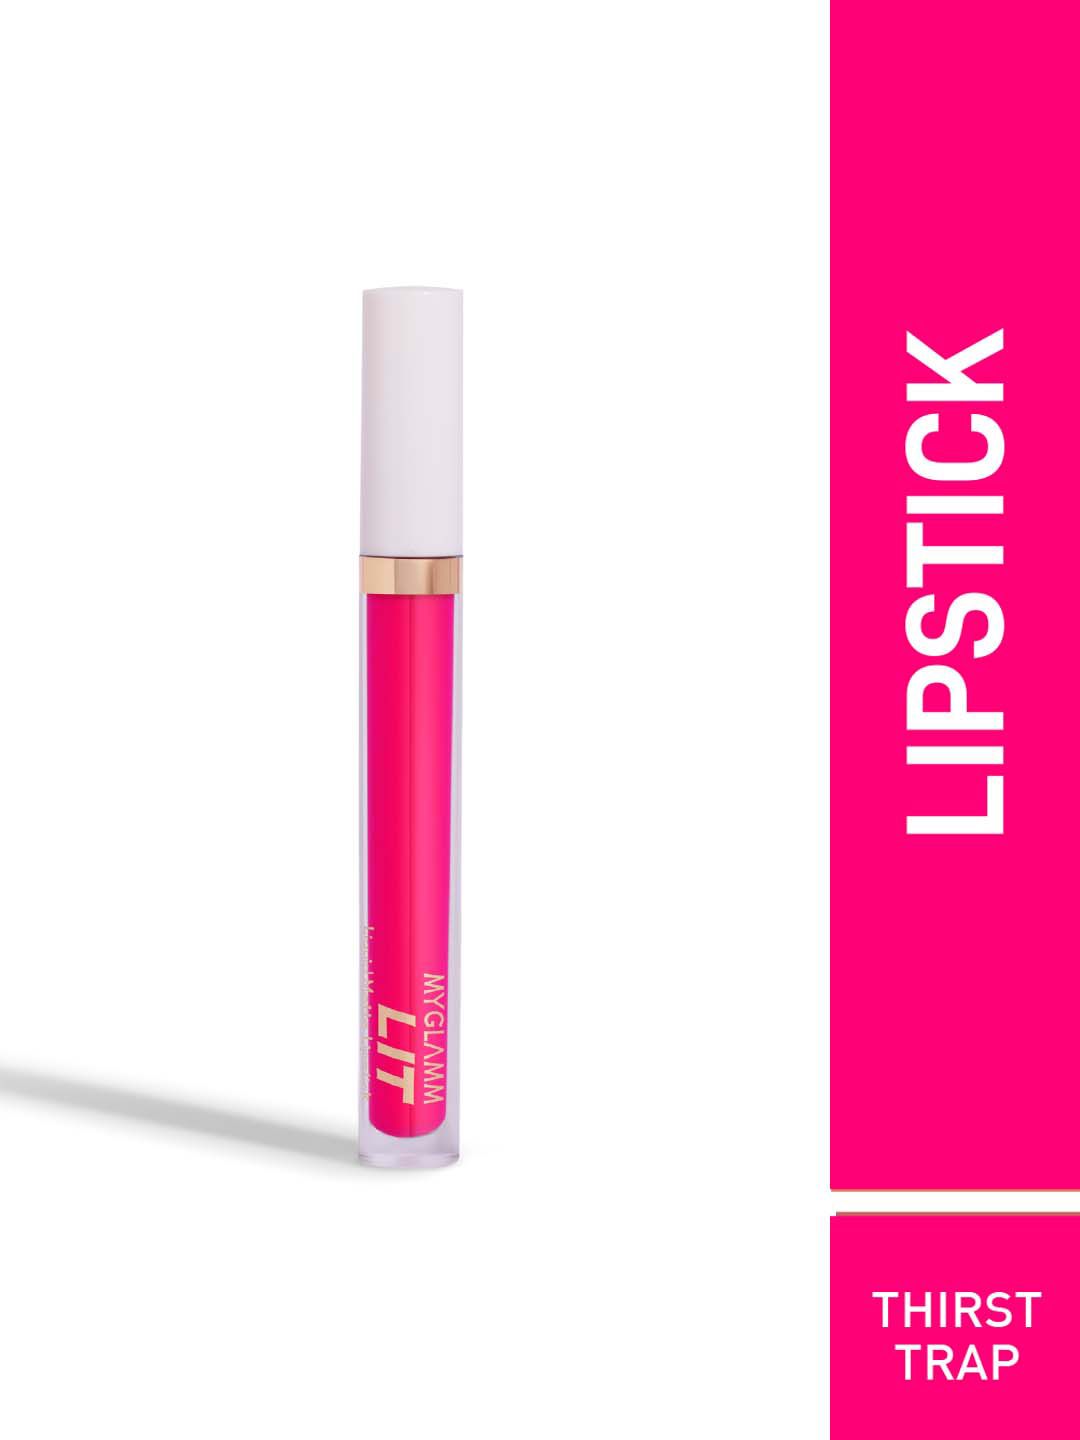 MyGlamm LIT Liquid Matte Lipstick-Thirst Trap-3ml Price in India